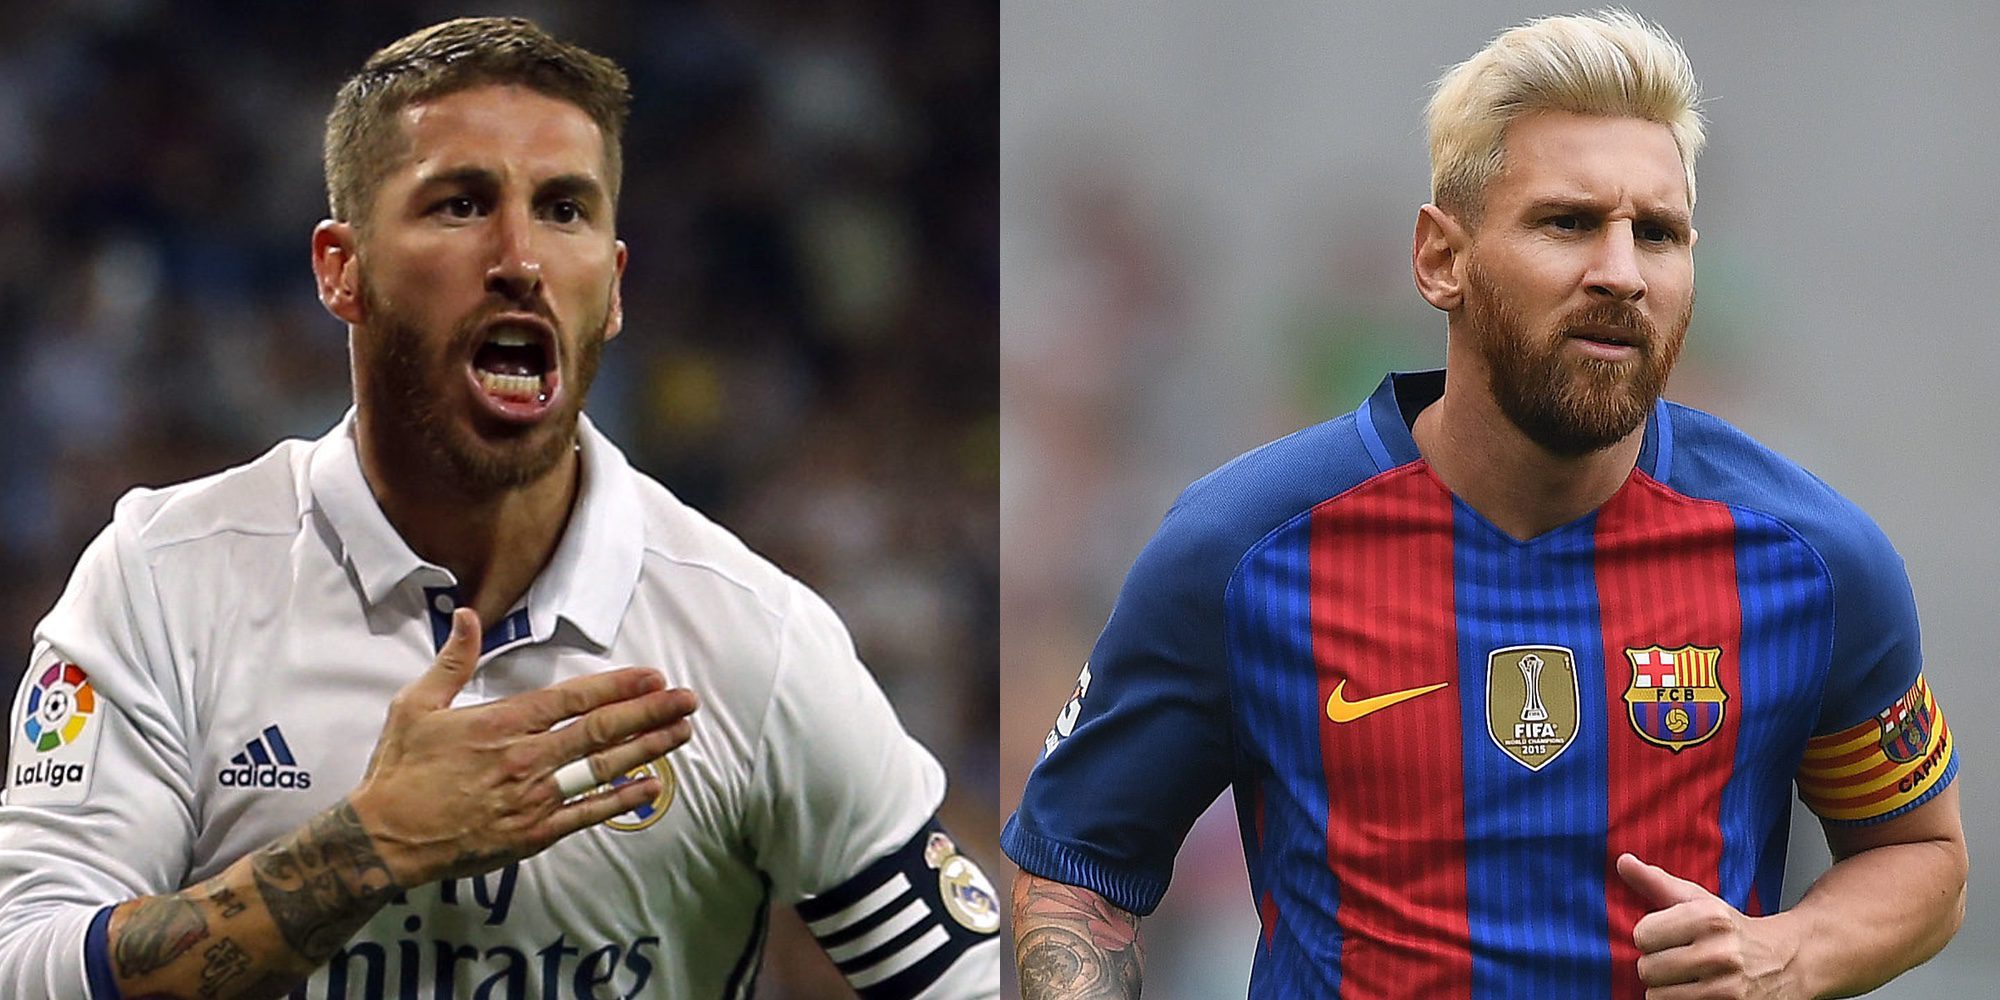 Leo Messi estalla ante el vacile de Sergio Ramos en la Supercopa de España: "¡La concha de tu madre!"